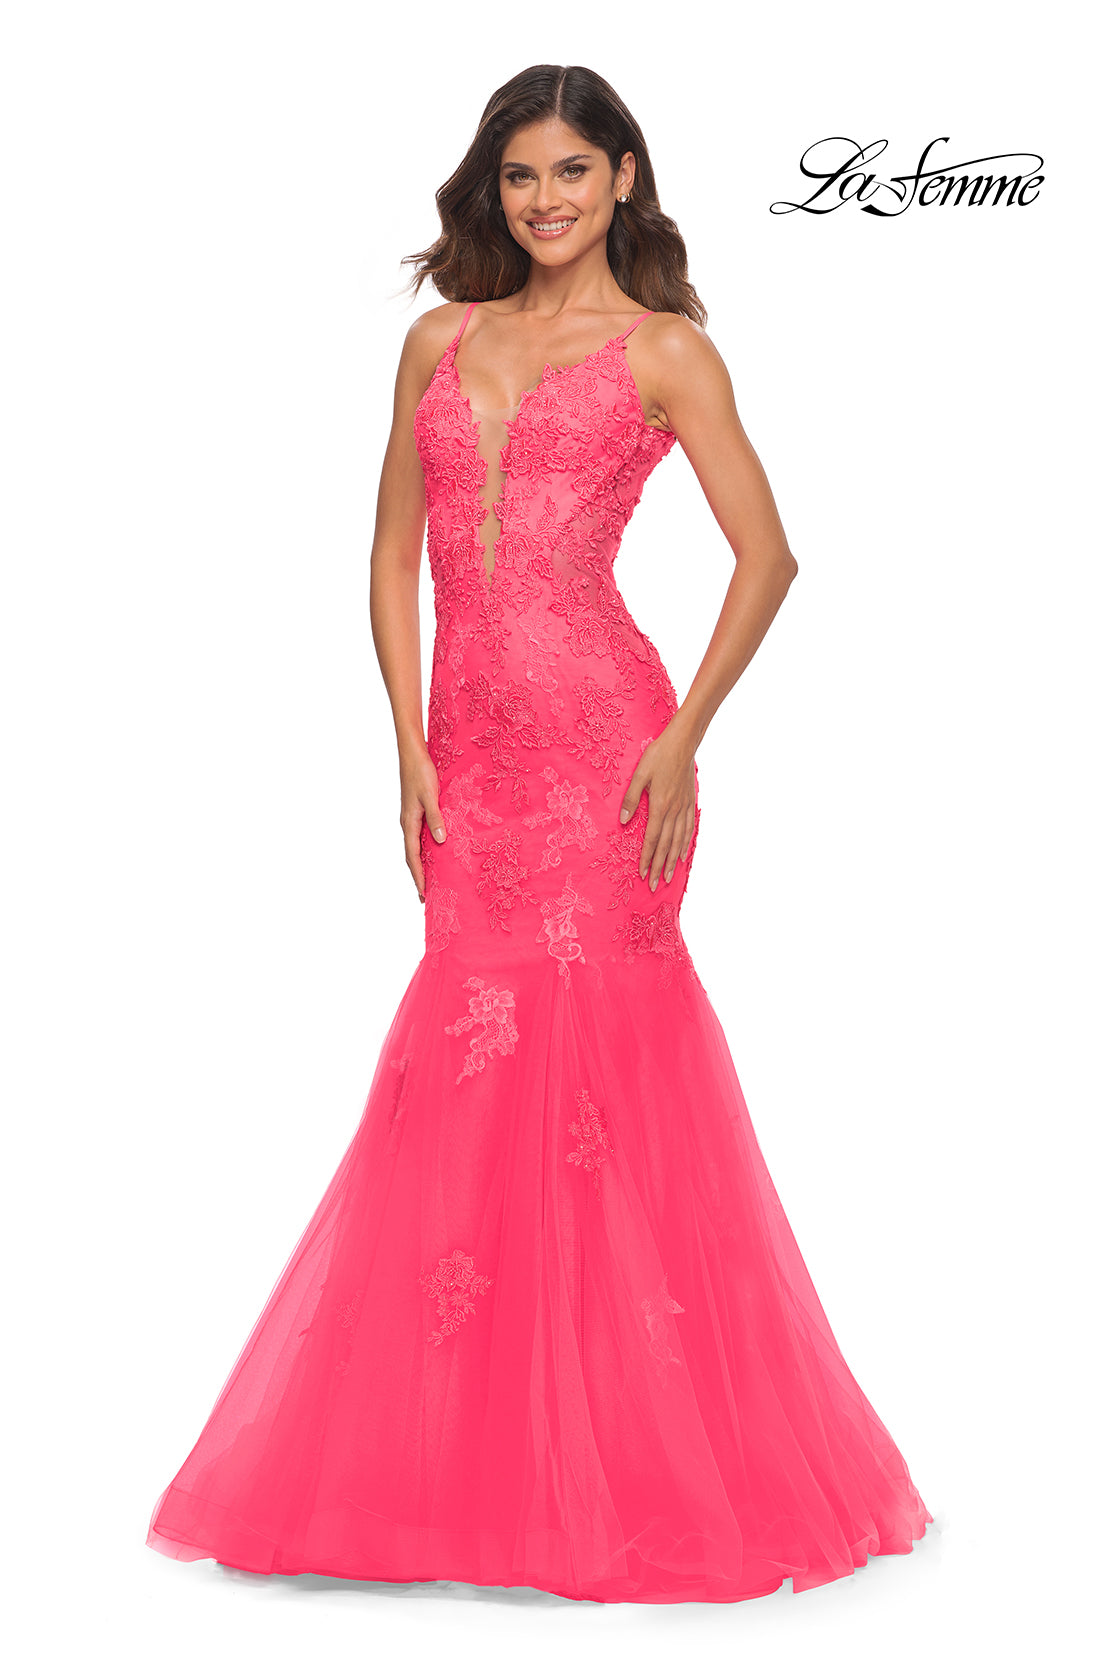 La Femme Neon Pink Long Mermaid Prom Dress